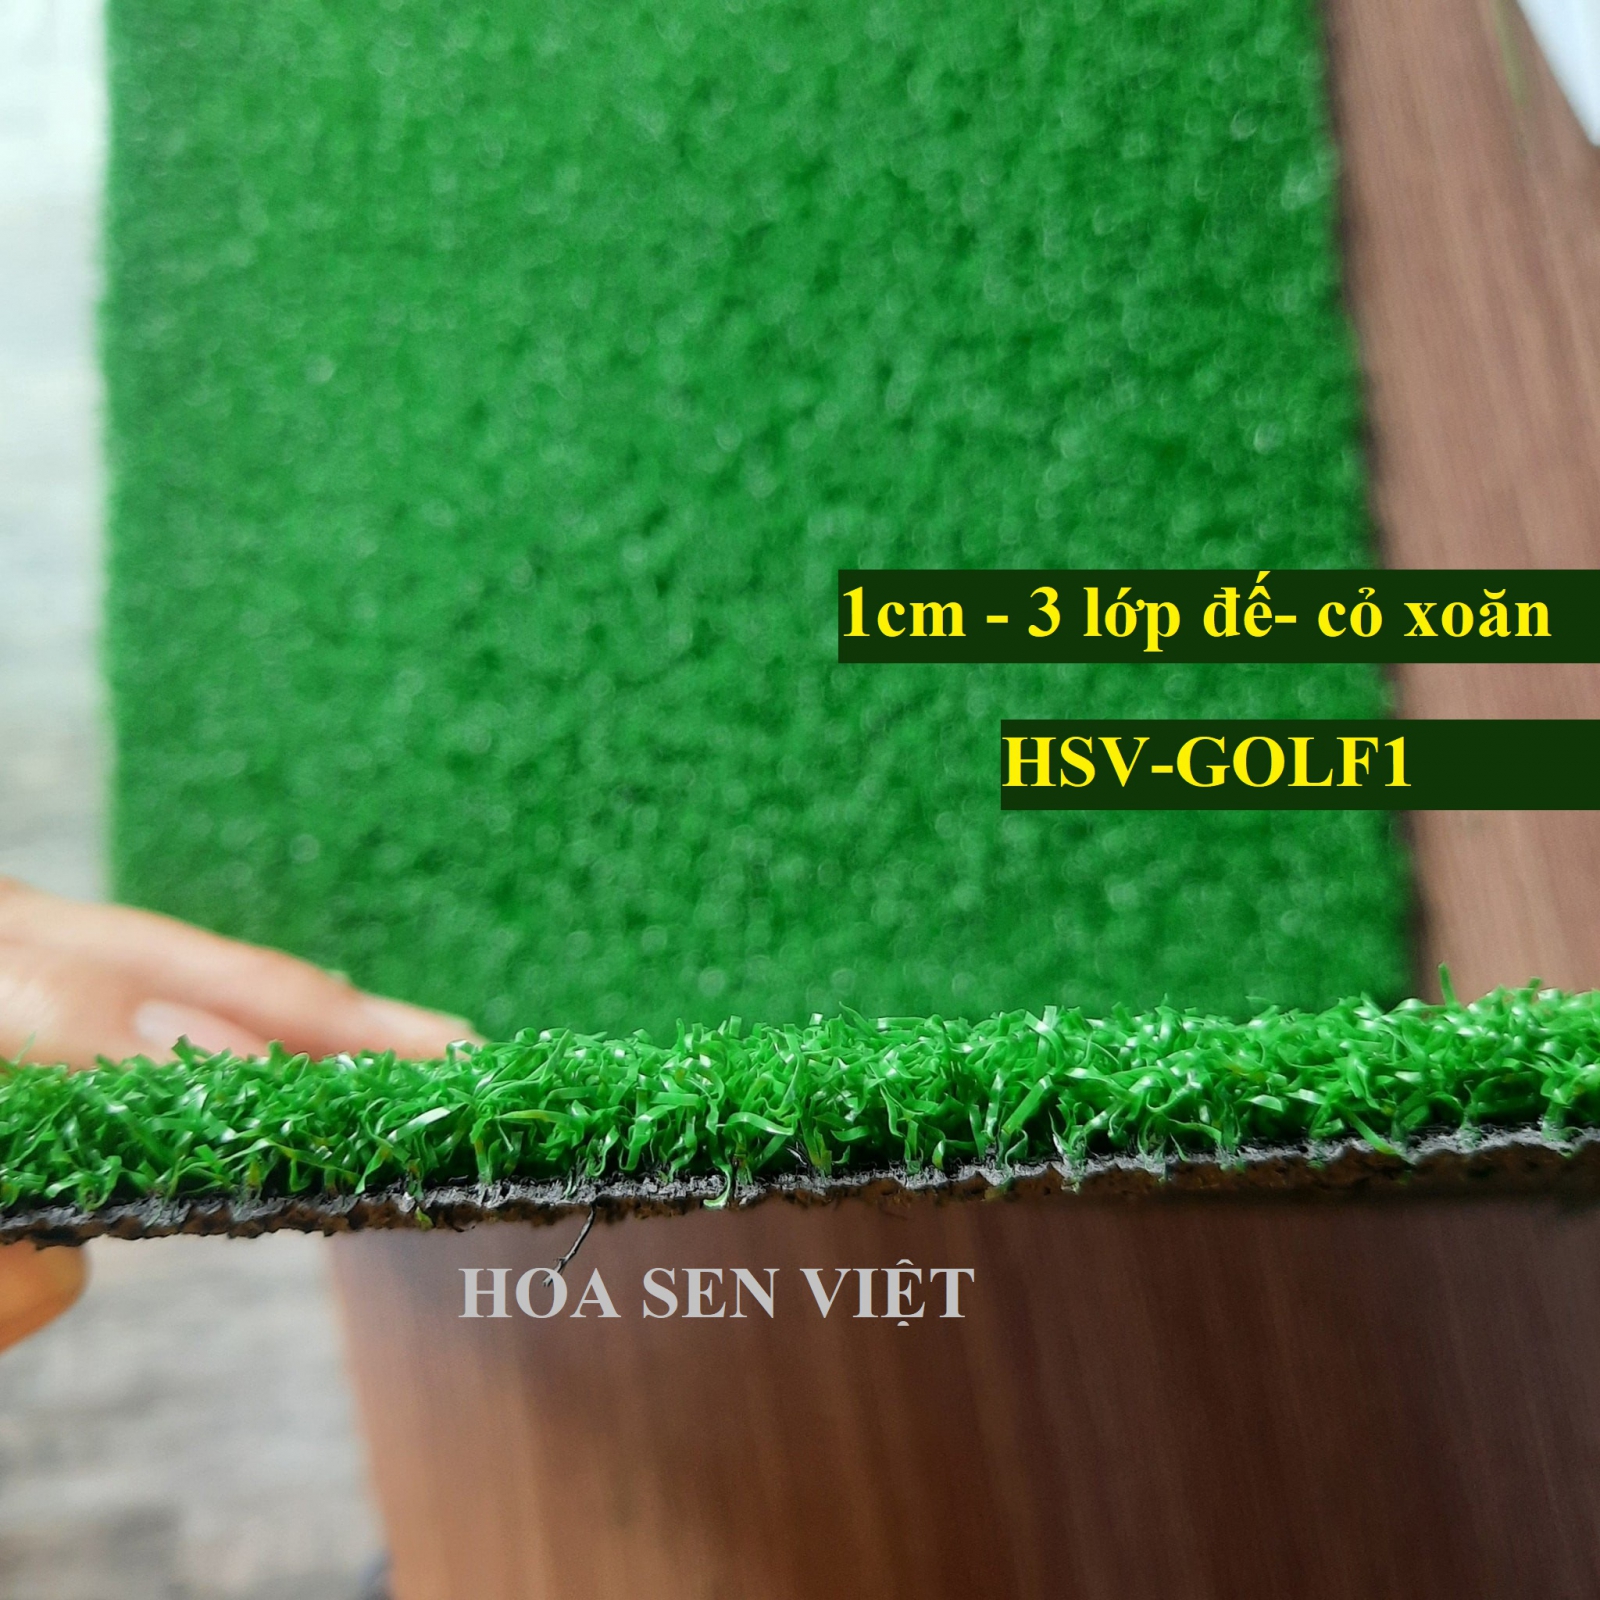 Cỏ nhân tạo sân golf tốt - Cửa hàng cỏ nhân tạo Đà Nẵng